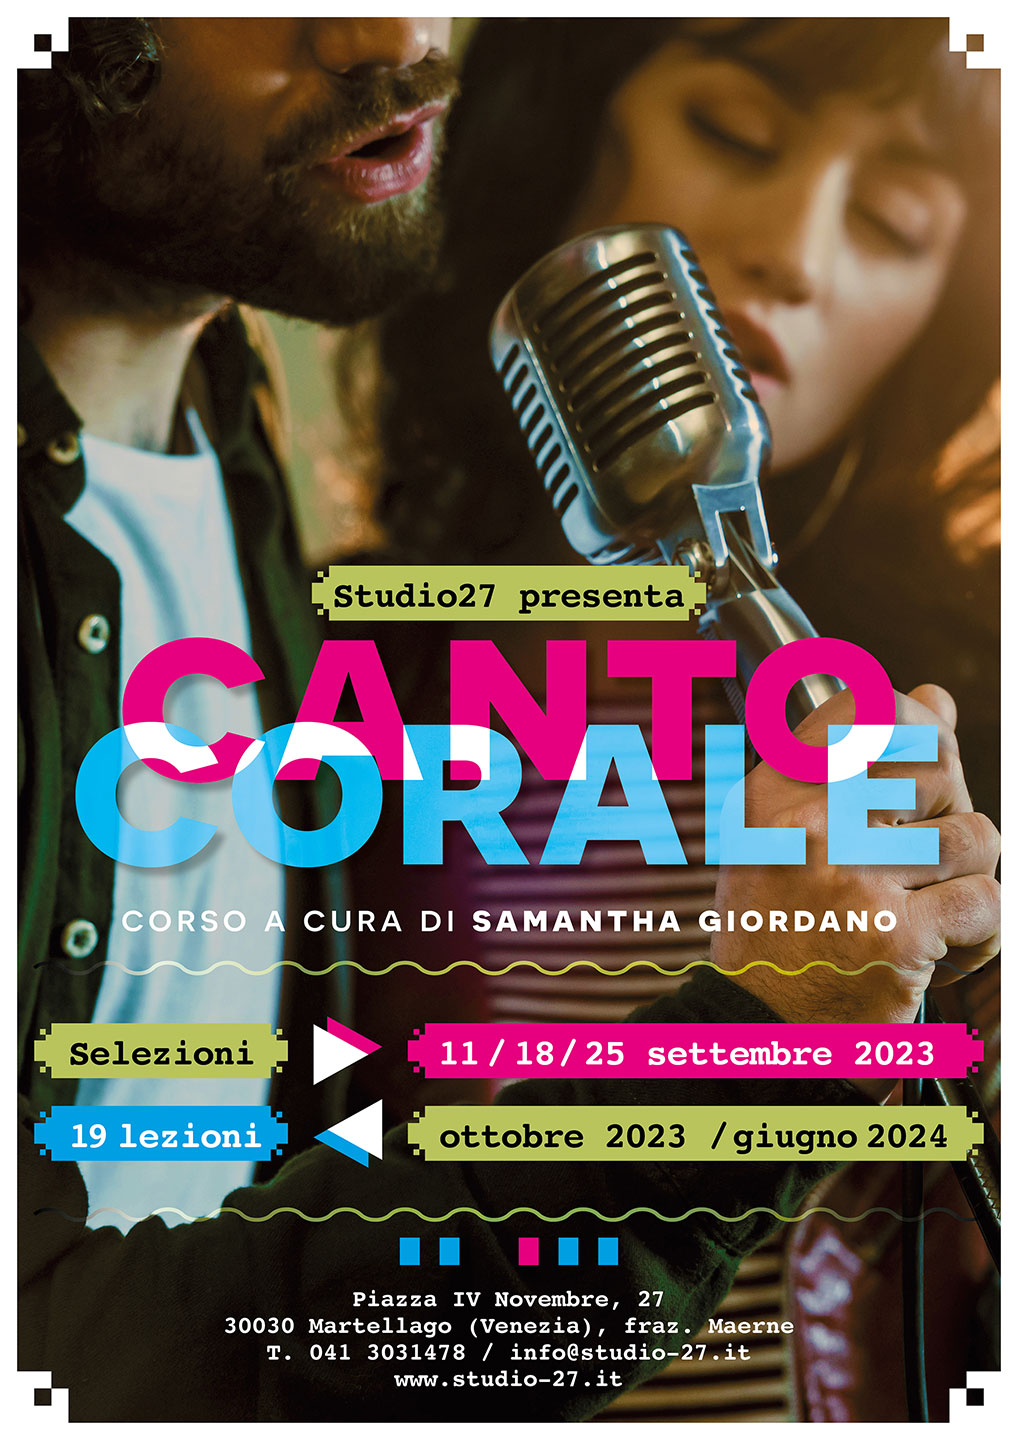 Studio27 - Corso di Canto Corale 2023 / 2024